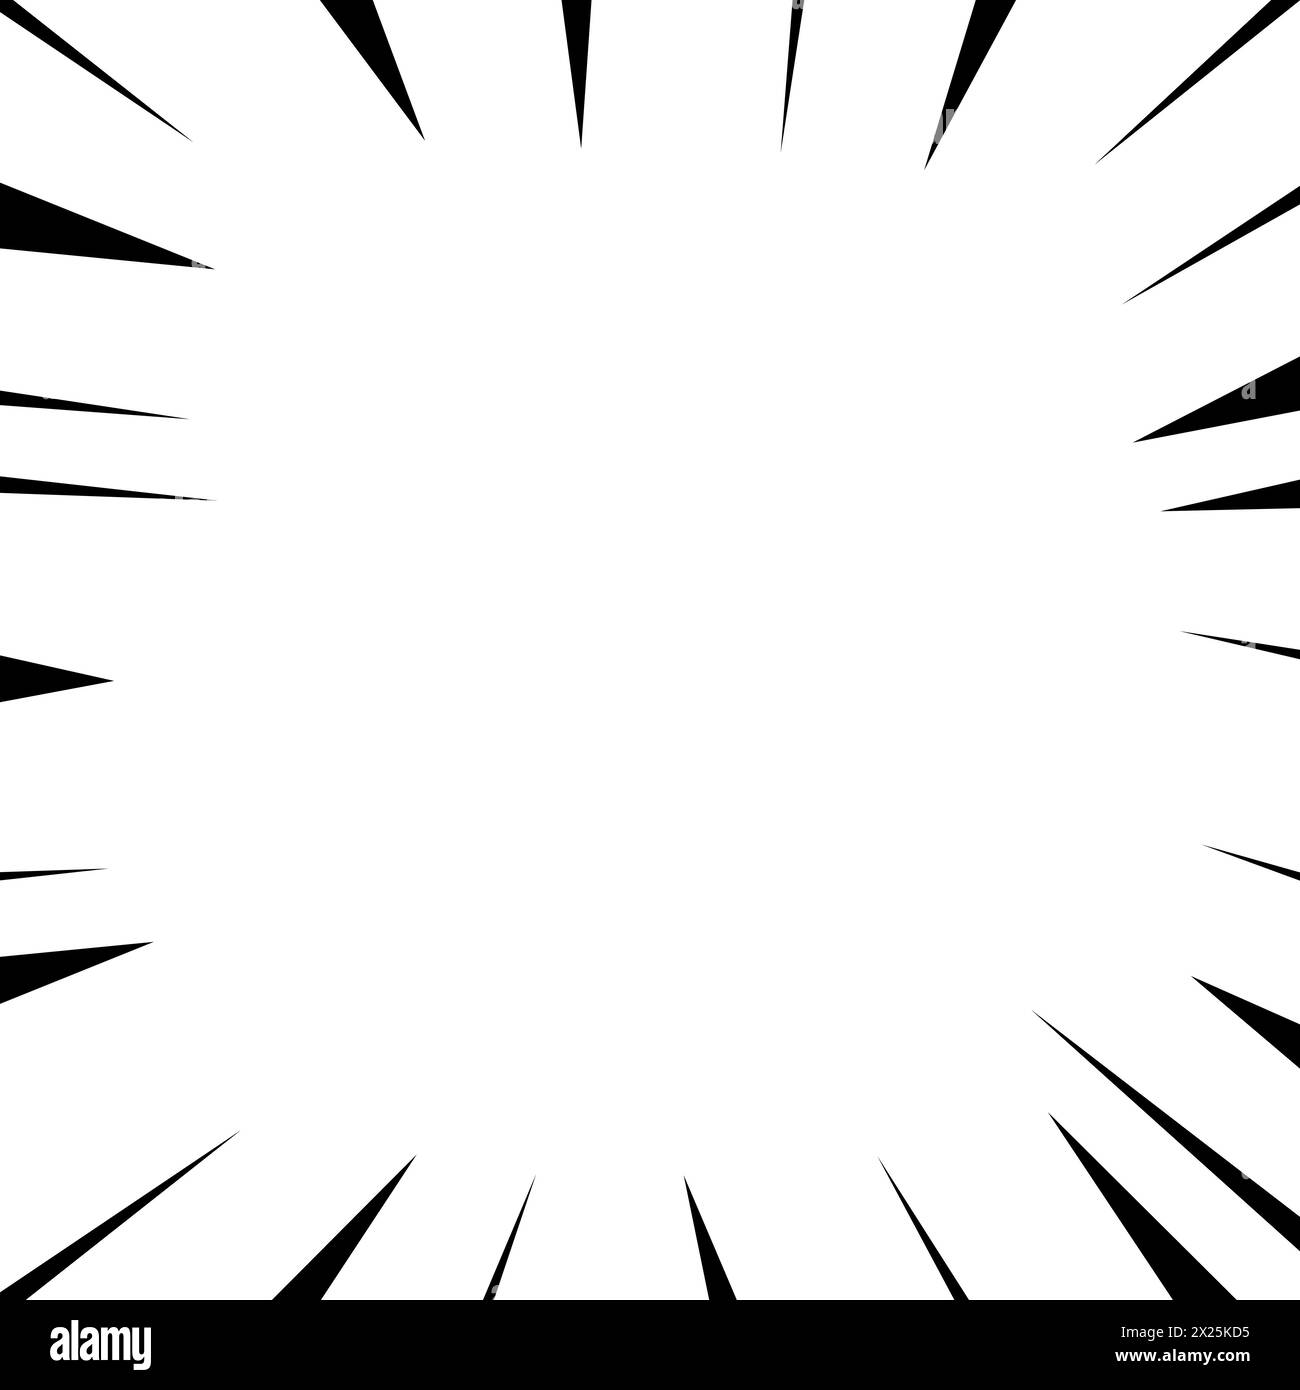 Überraschungs- oder Explosionseffekt für Manga-Zeichentrickhintergrund. Abbildung der Elementaktion für Geschwindigkeitslinien in Schwarzweiß Stock Vektor